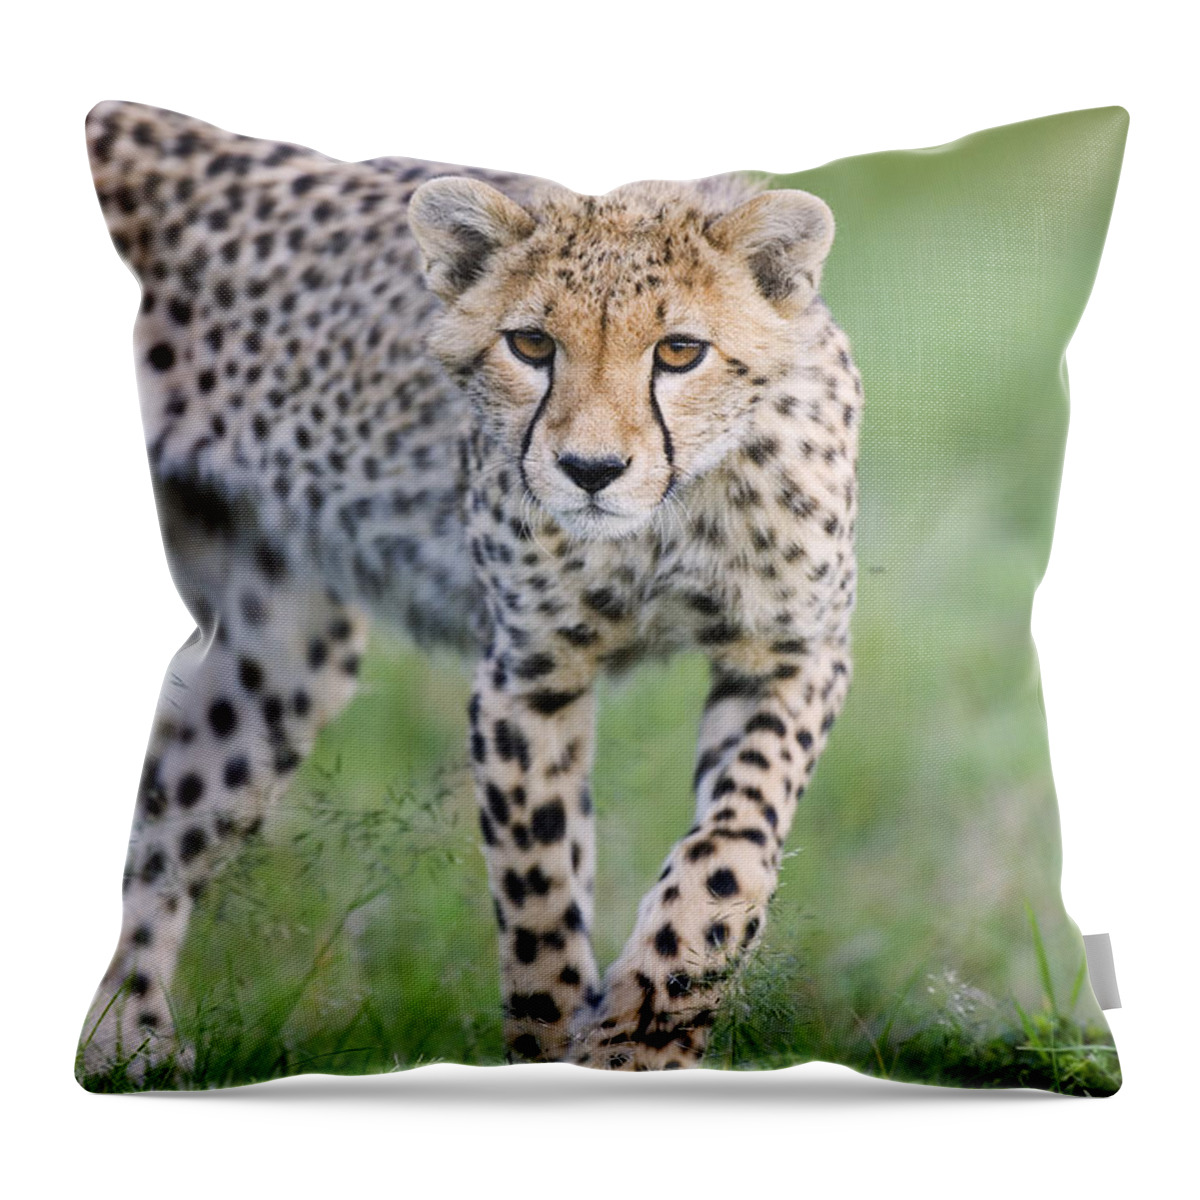 00761688 Throw Pillow featuring the photograph Masai Mara Cheetah Cub by Suzi Eszterhas